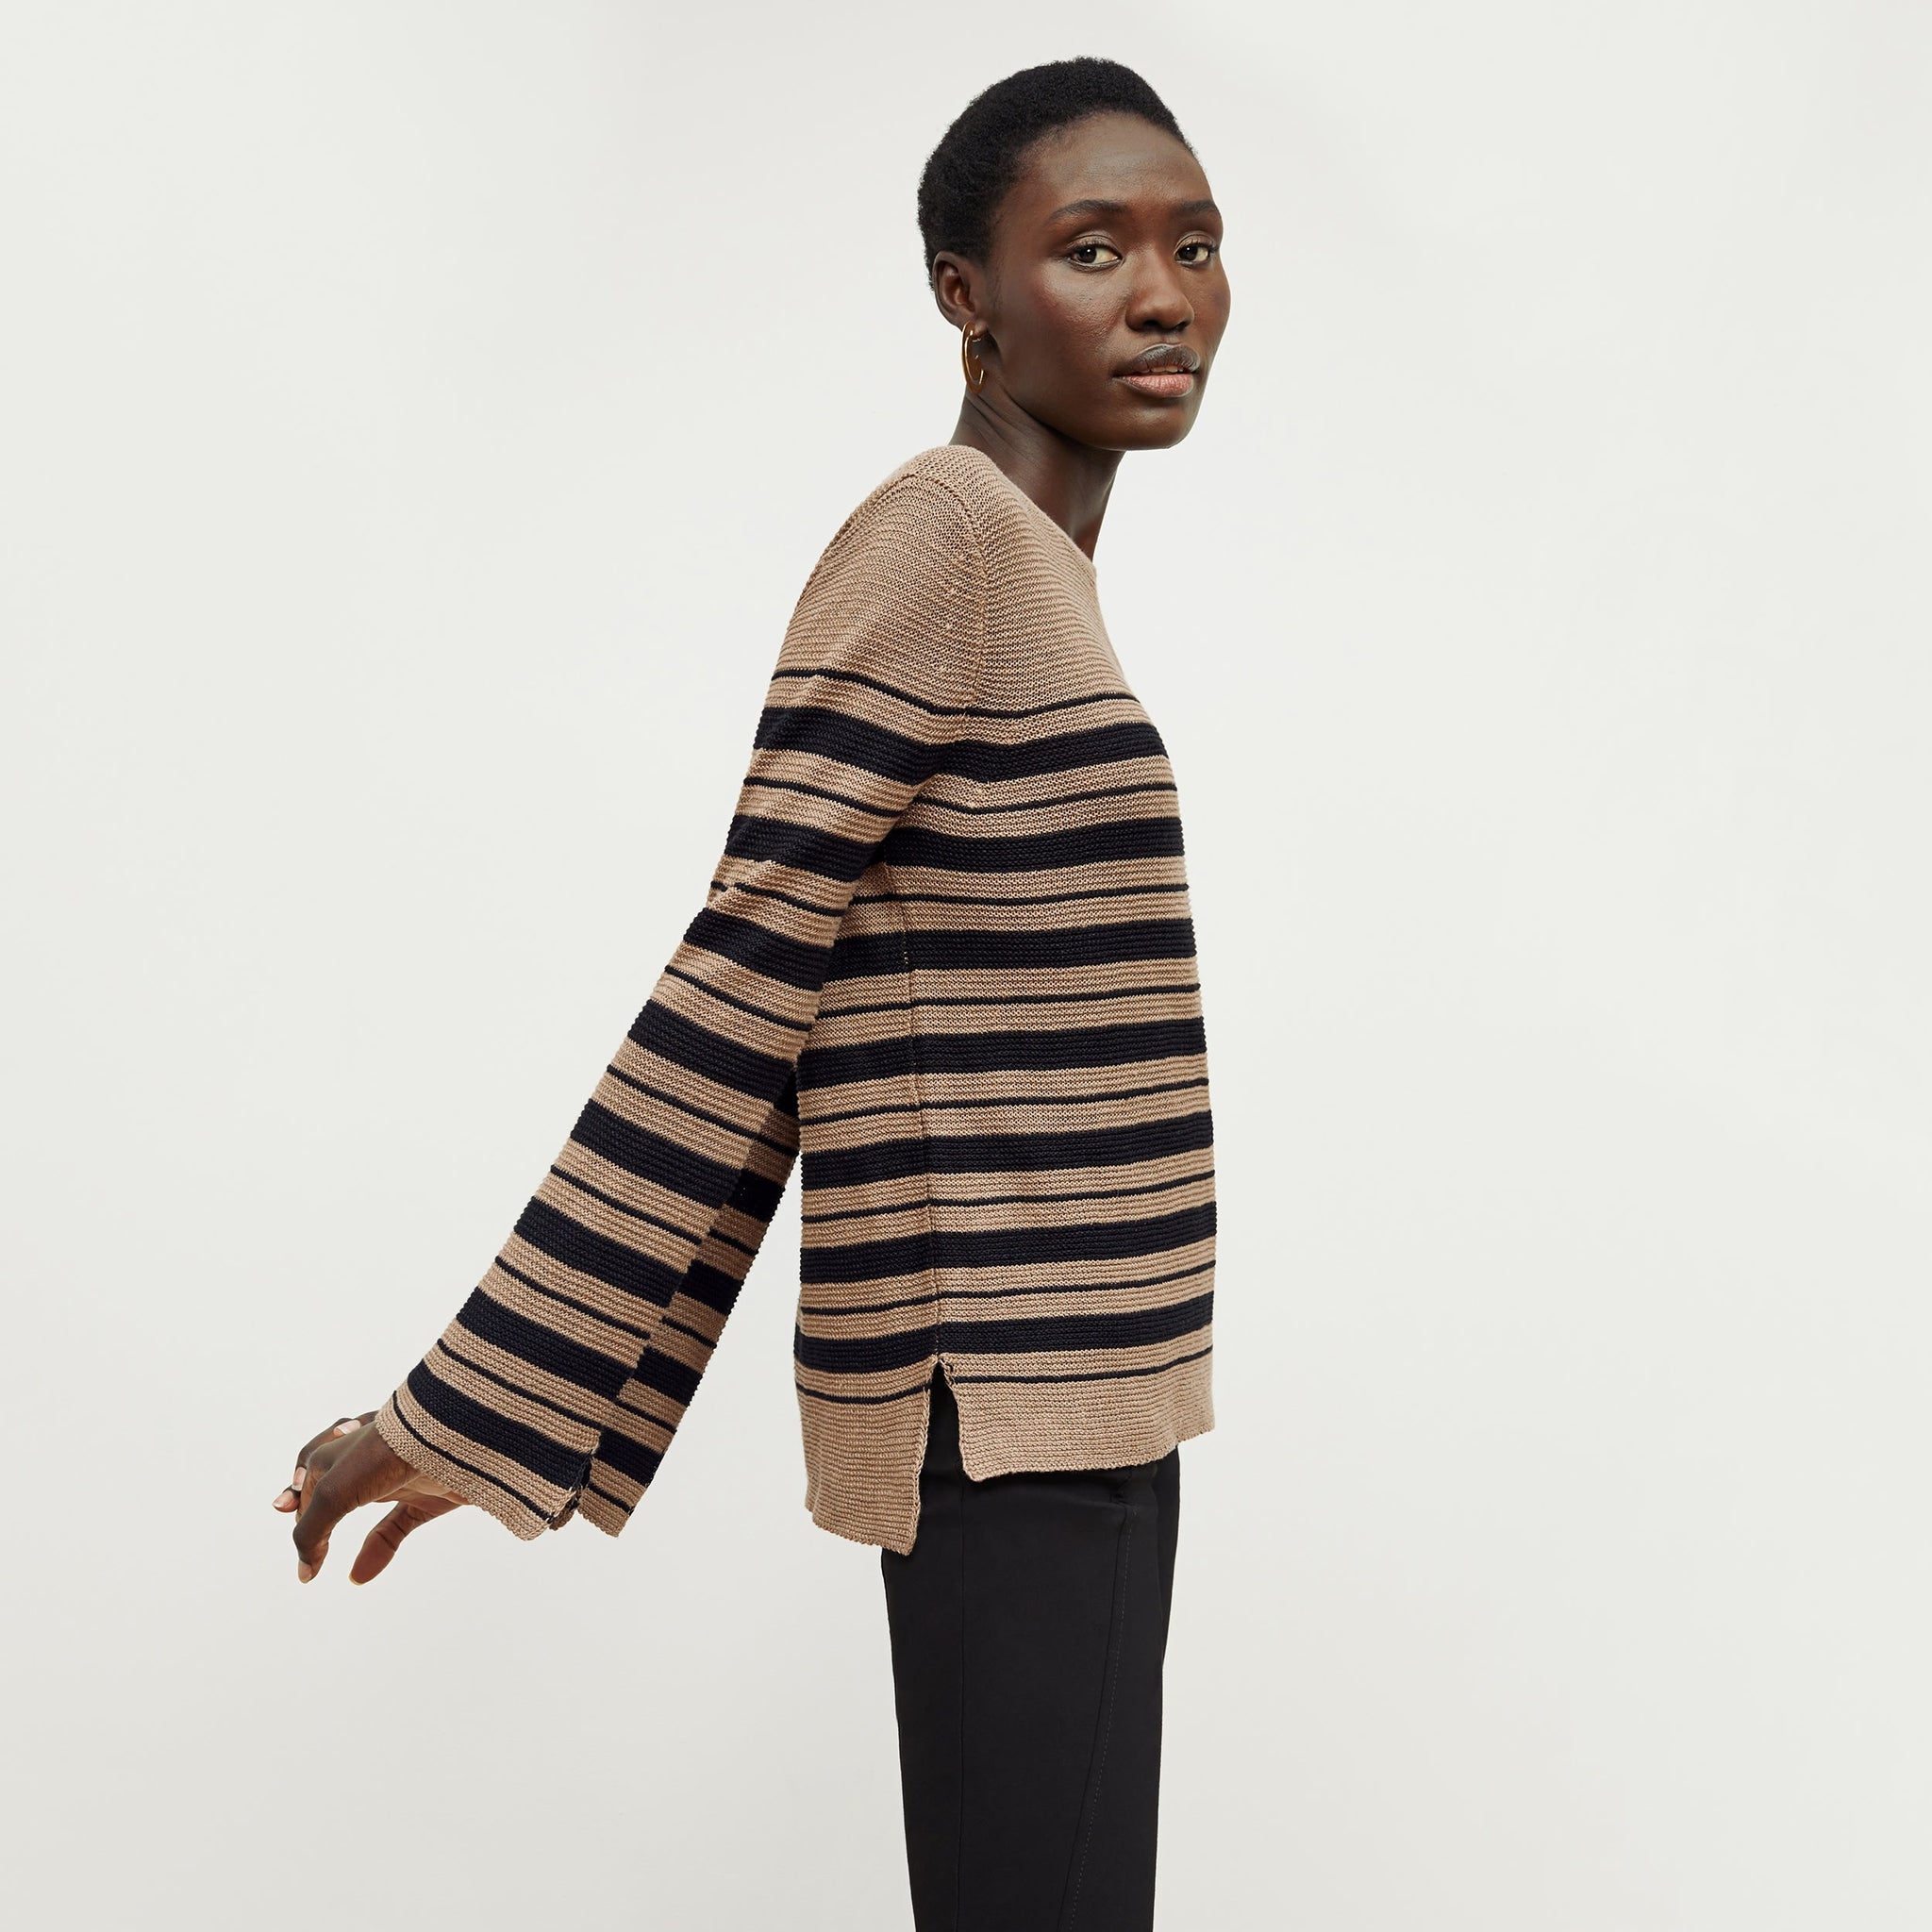 Side image of a woman standing wearing the Samara Sweater—Knit Linen in Oak / Black